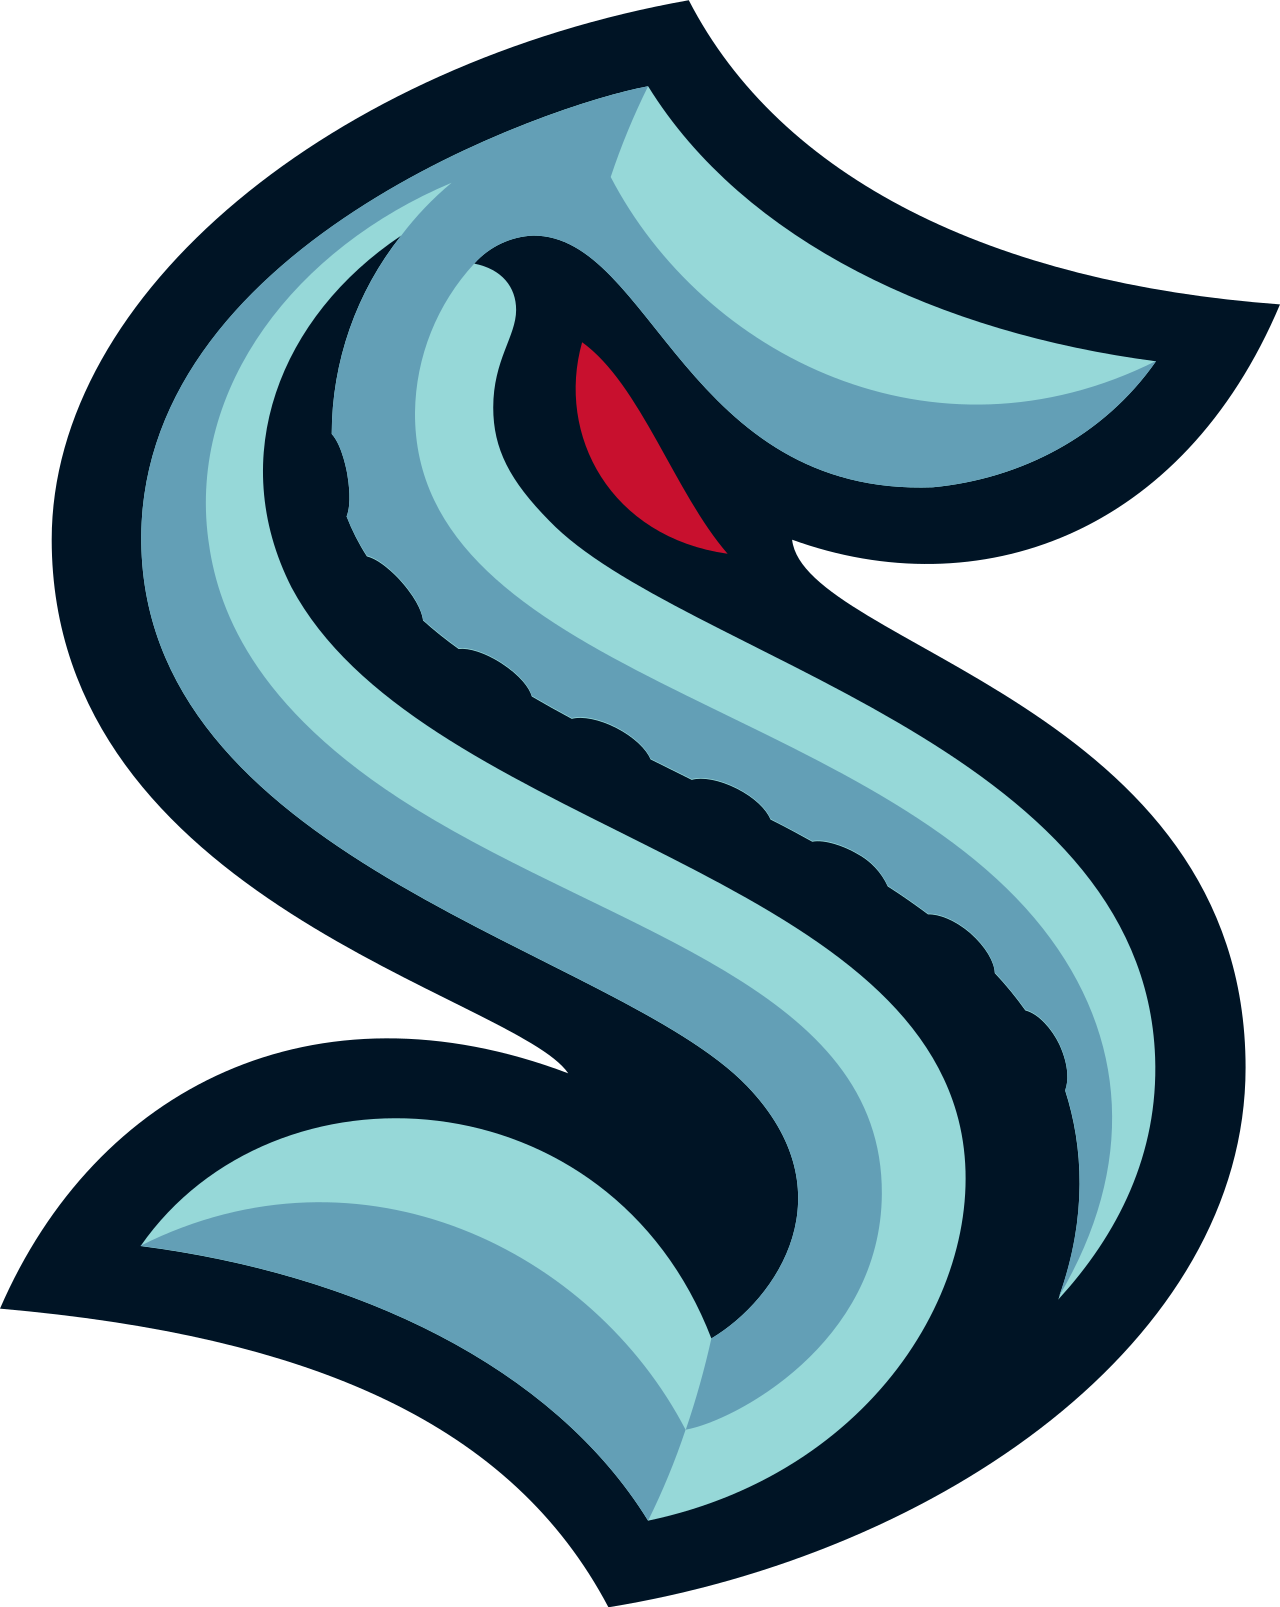 Seattle_Kraken_official_logo.svg.png